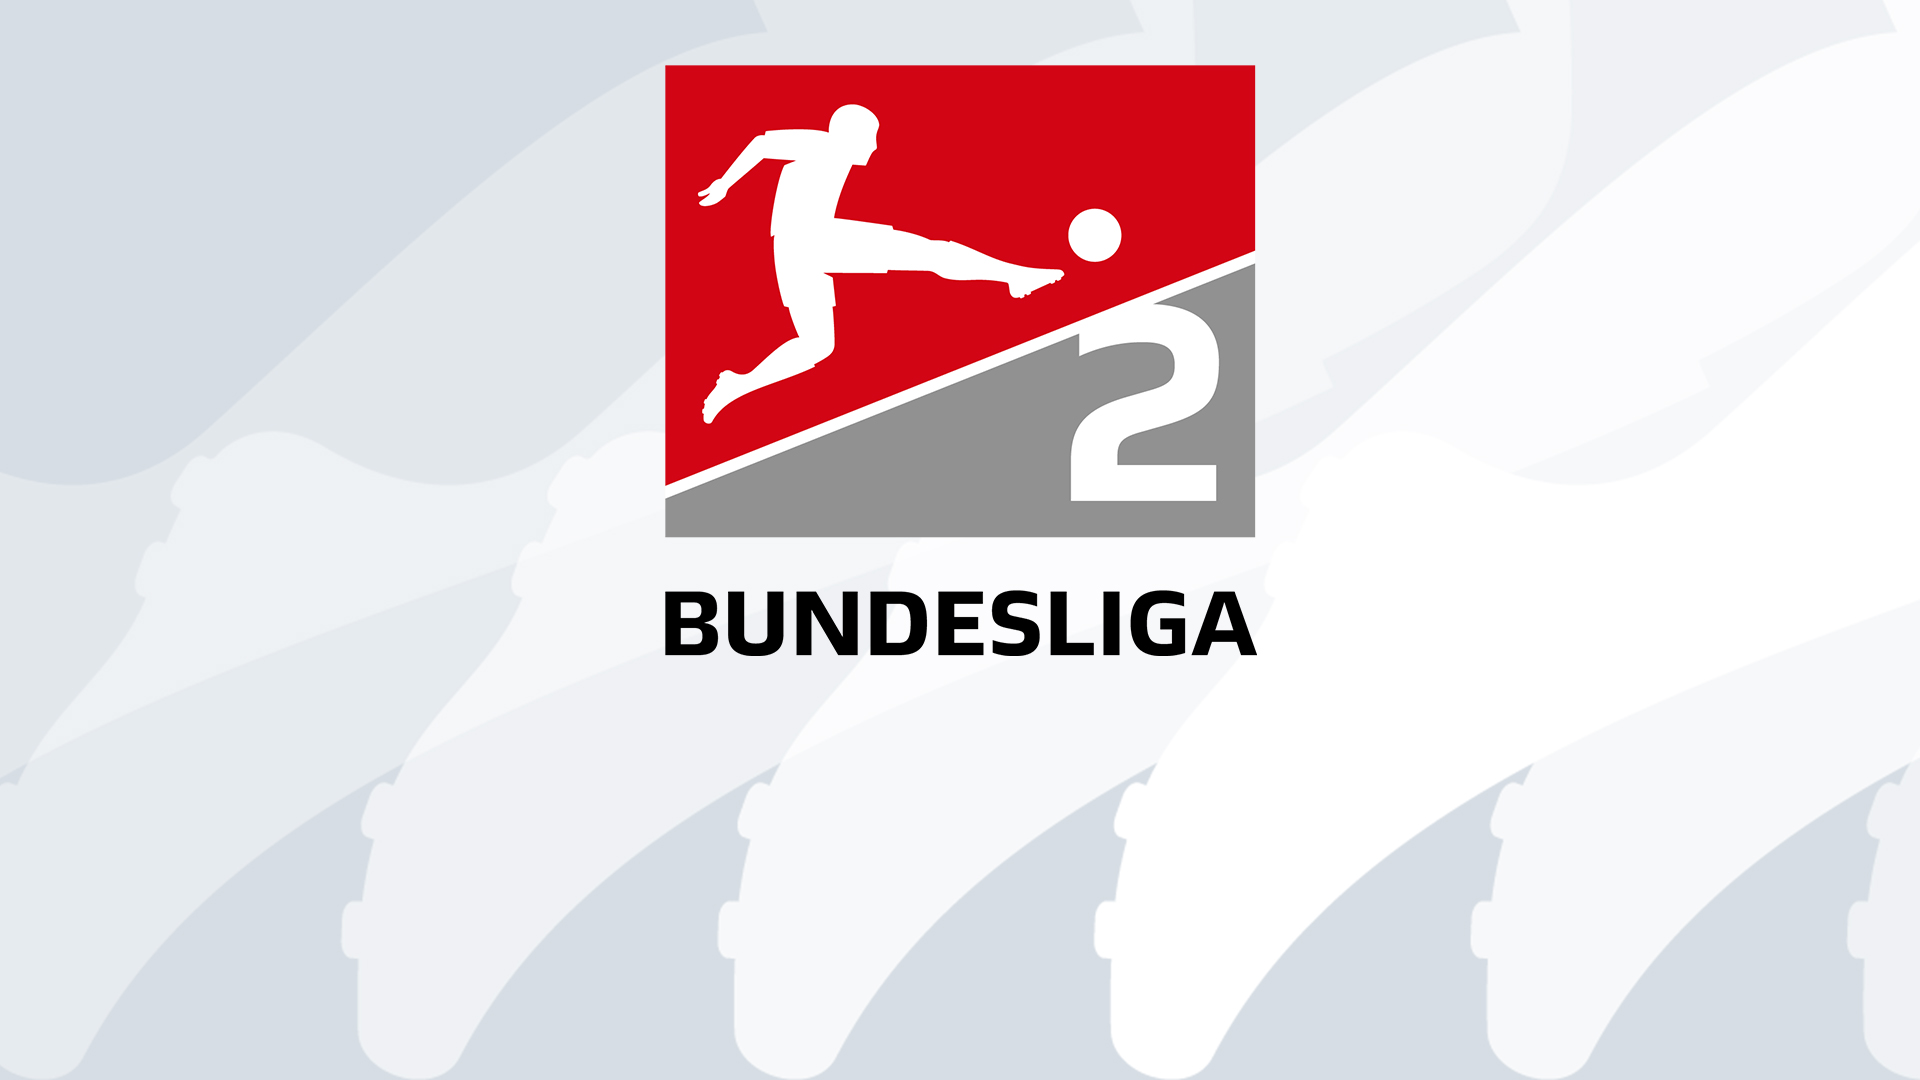 Karlsruhe Darmstadt 98, 2. Bundesliga: pronostico, probabili formazioni, 30 luglio 2021